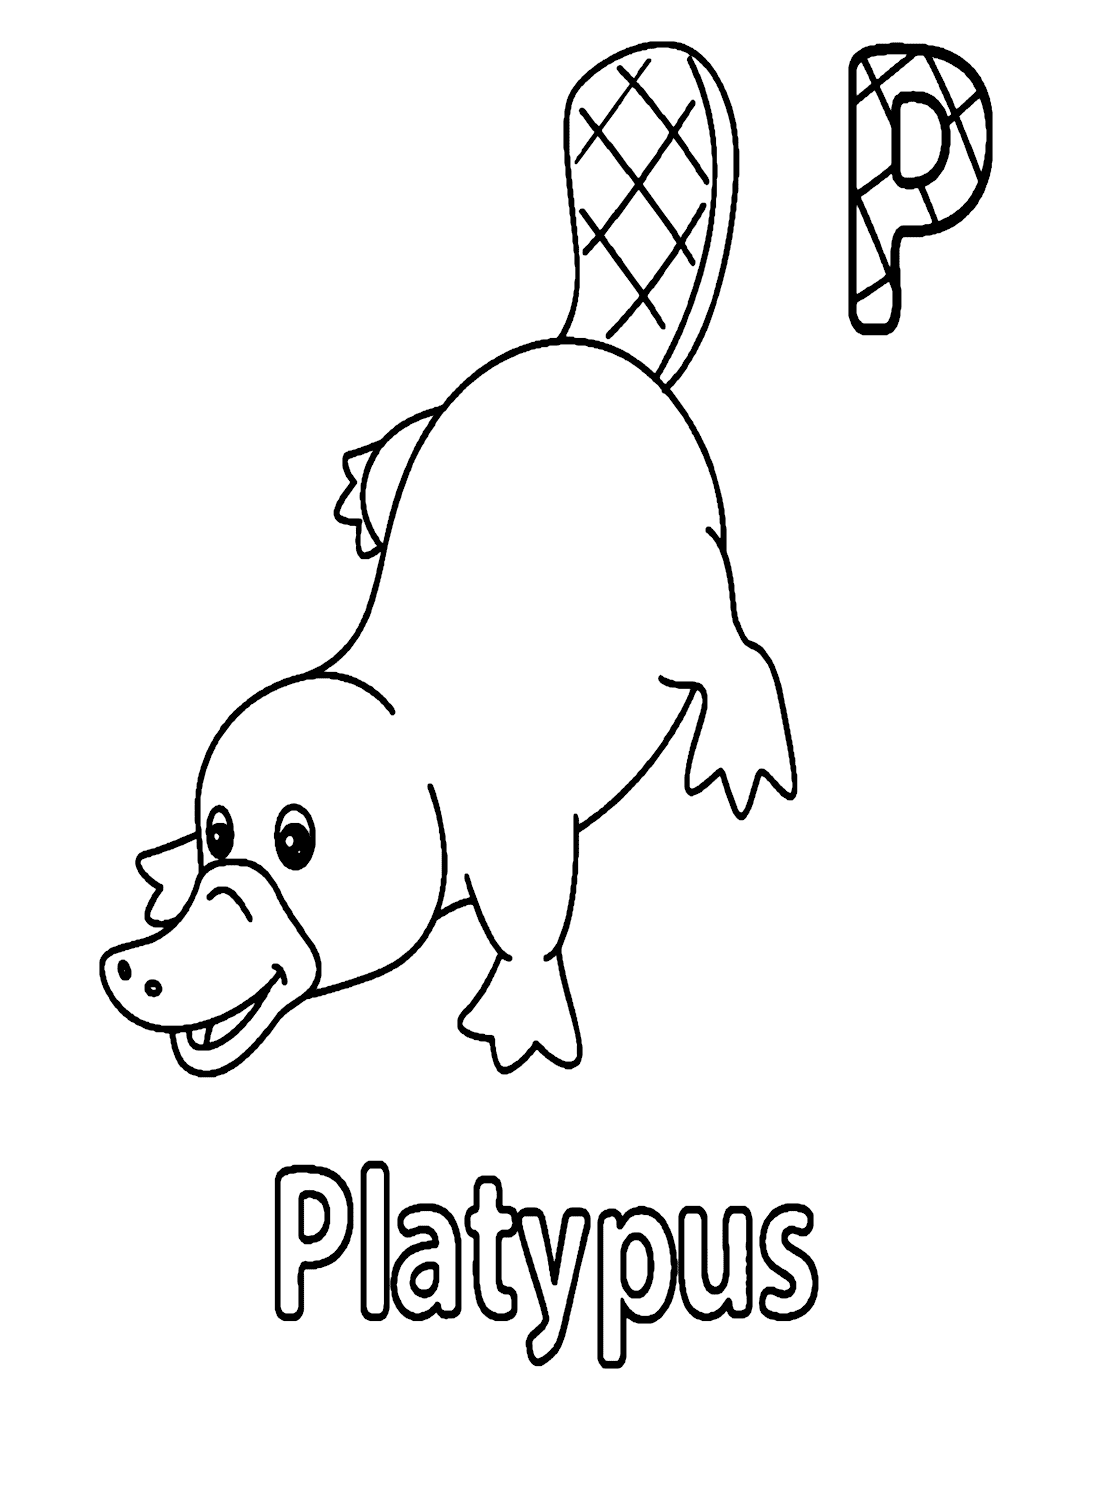 鸭嘴兽的字母 P 来自 Platypus